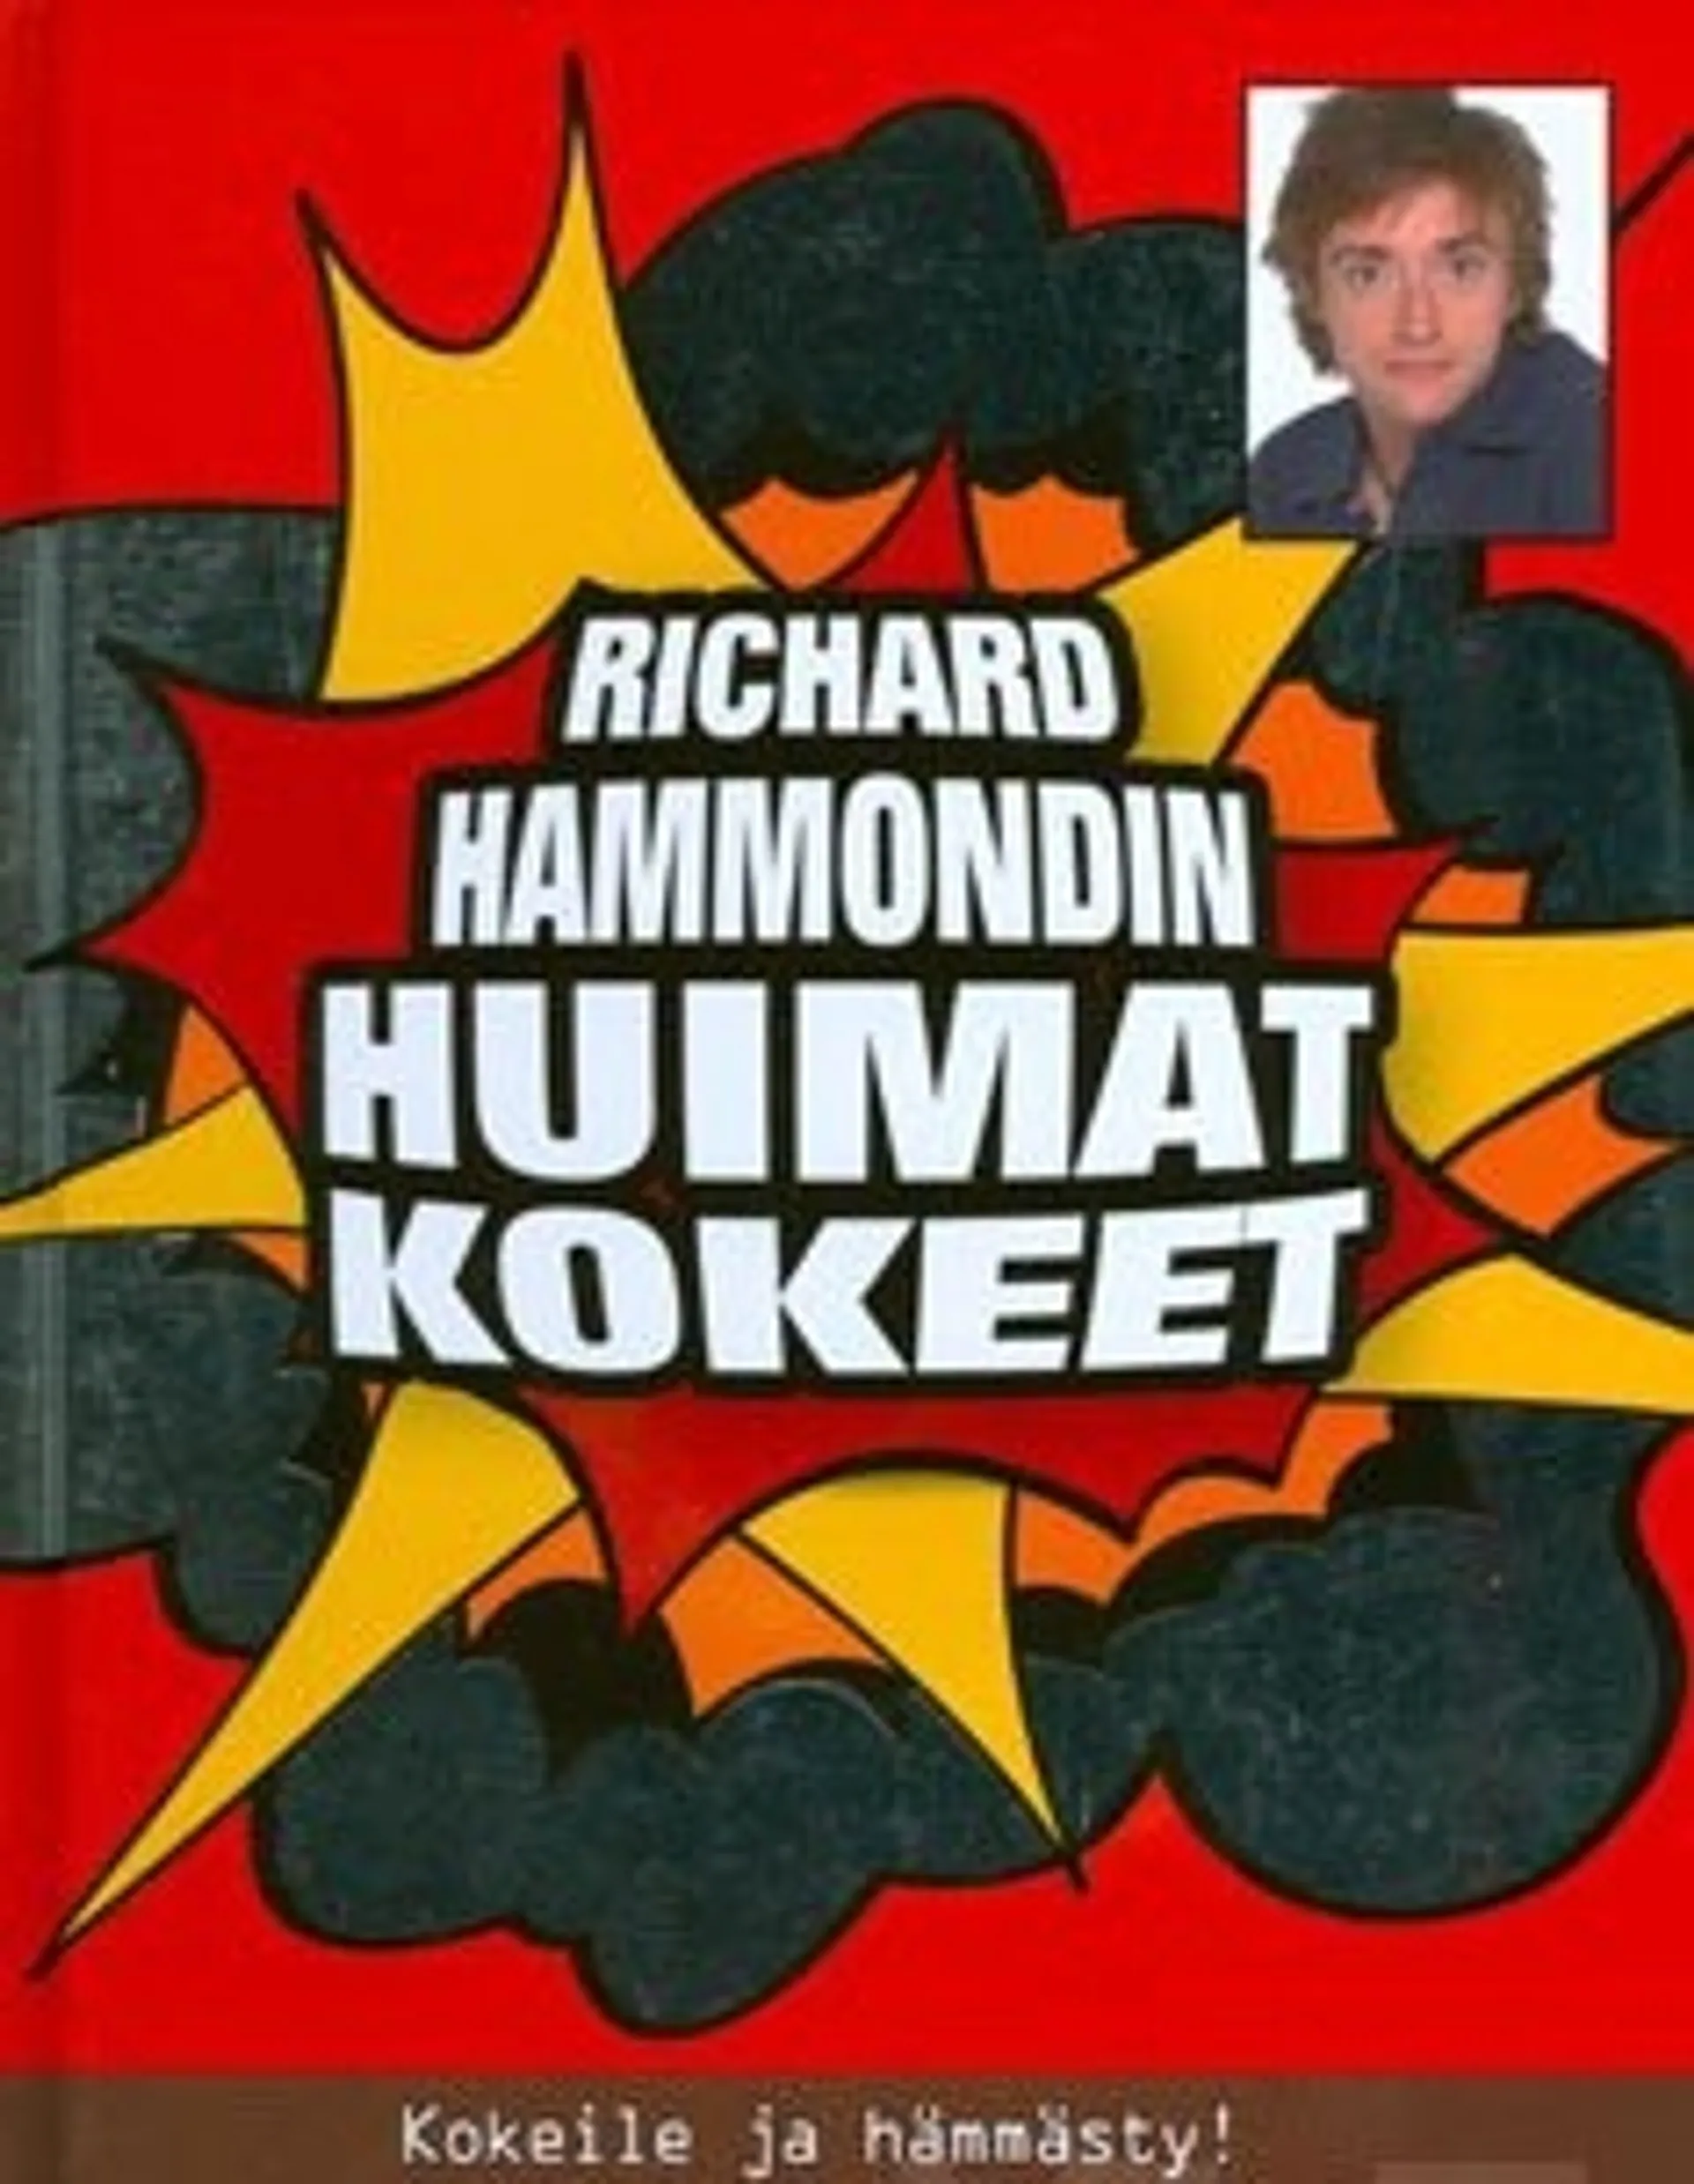 Richard Hammondin huimat kokeet